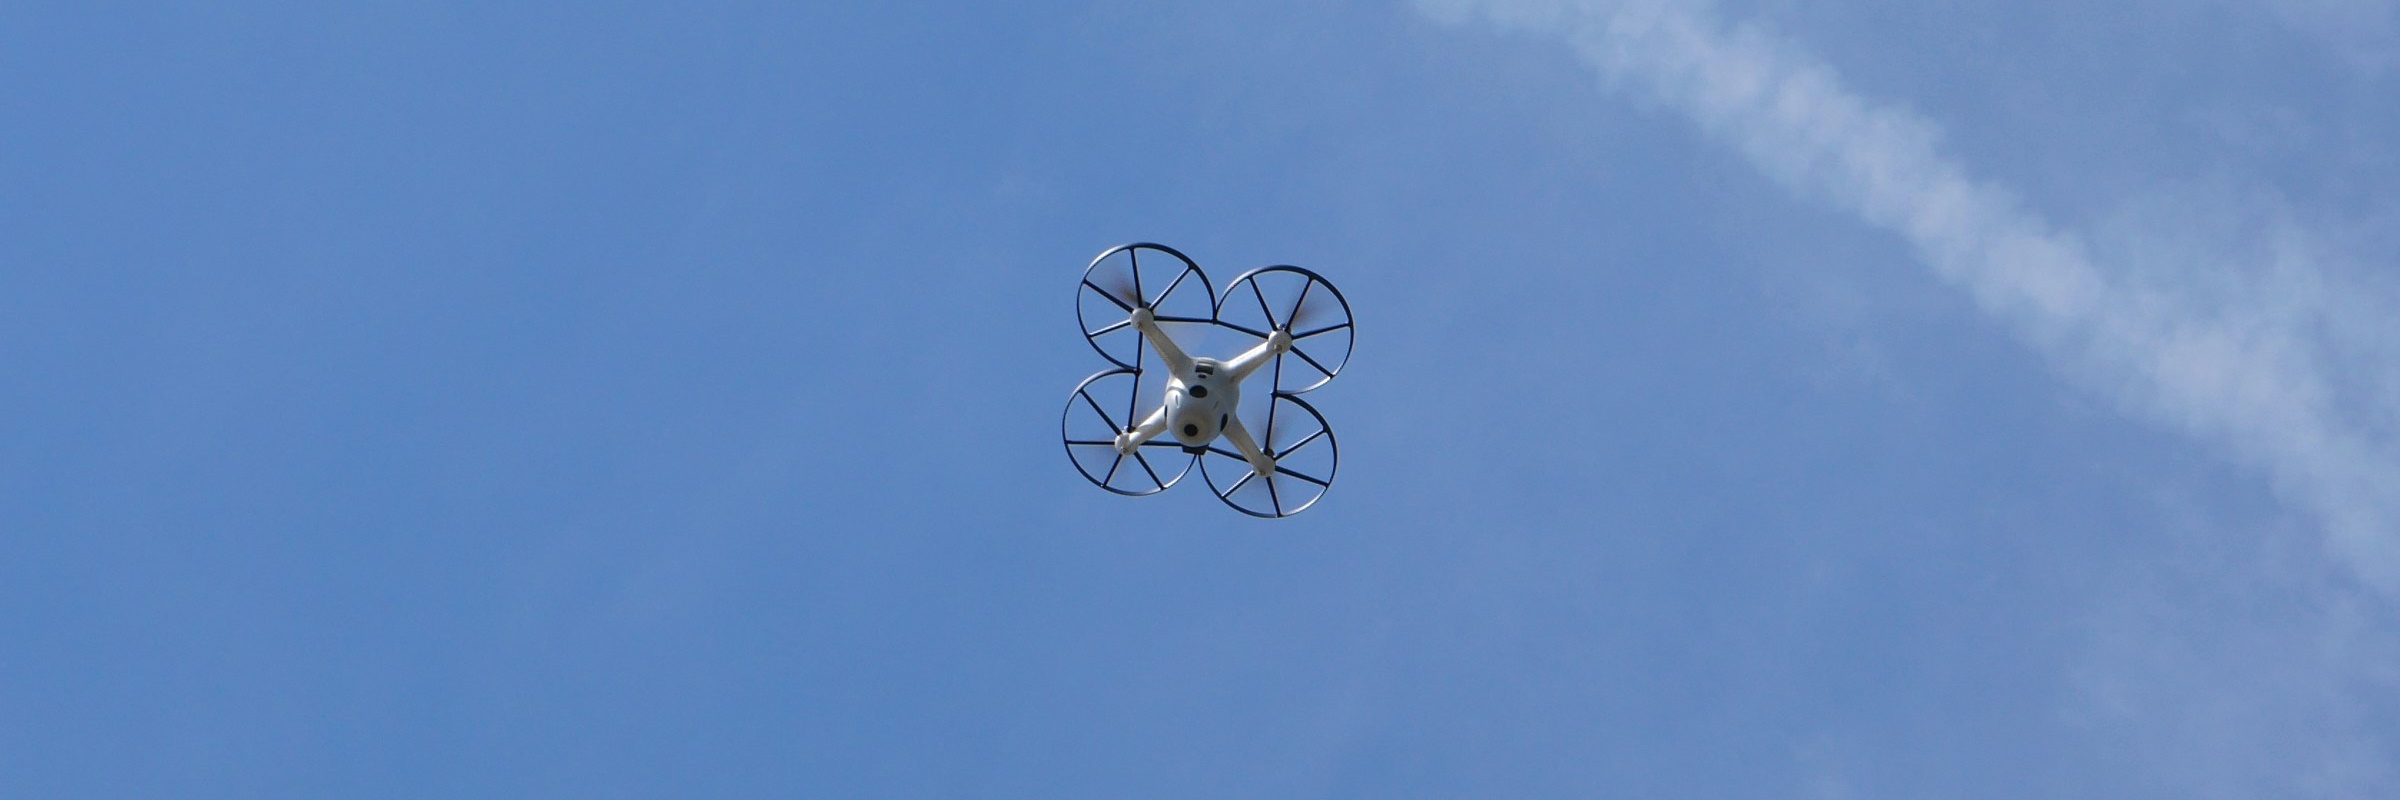 Flugroboter mit Überblick - das Drohnensystem Beehive